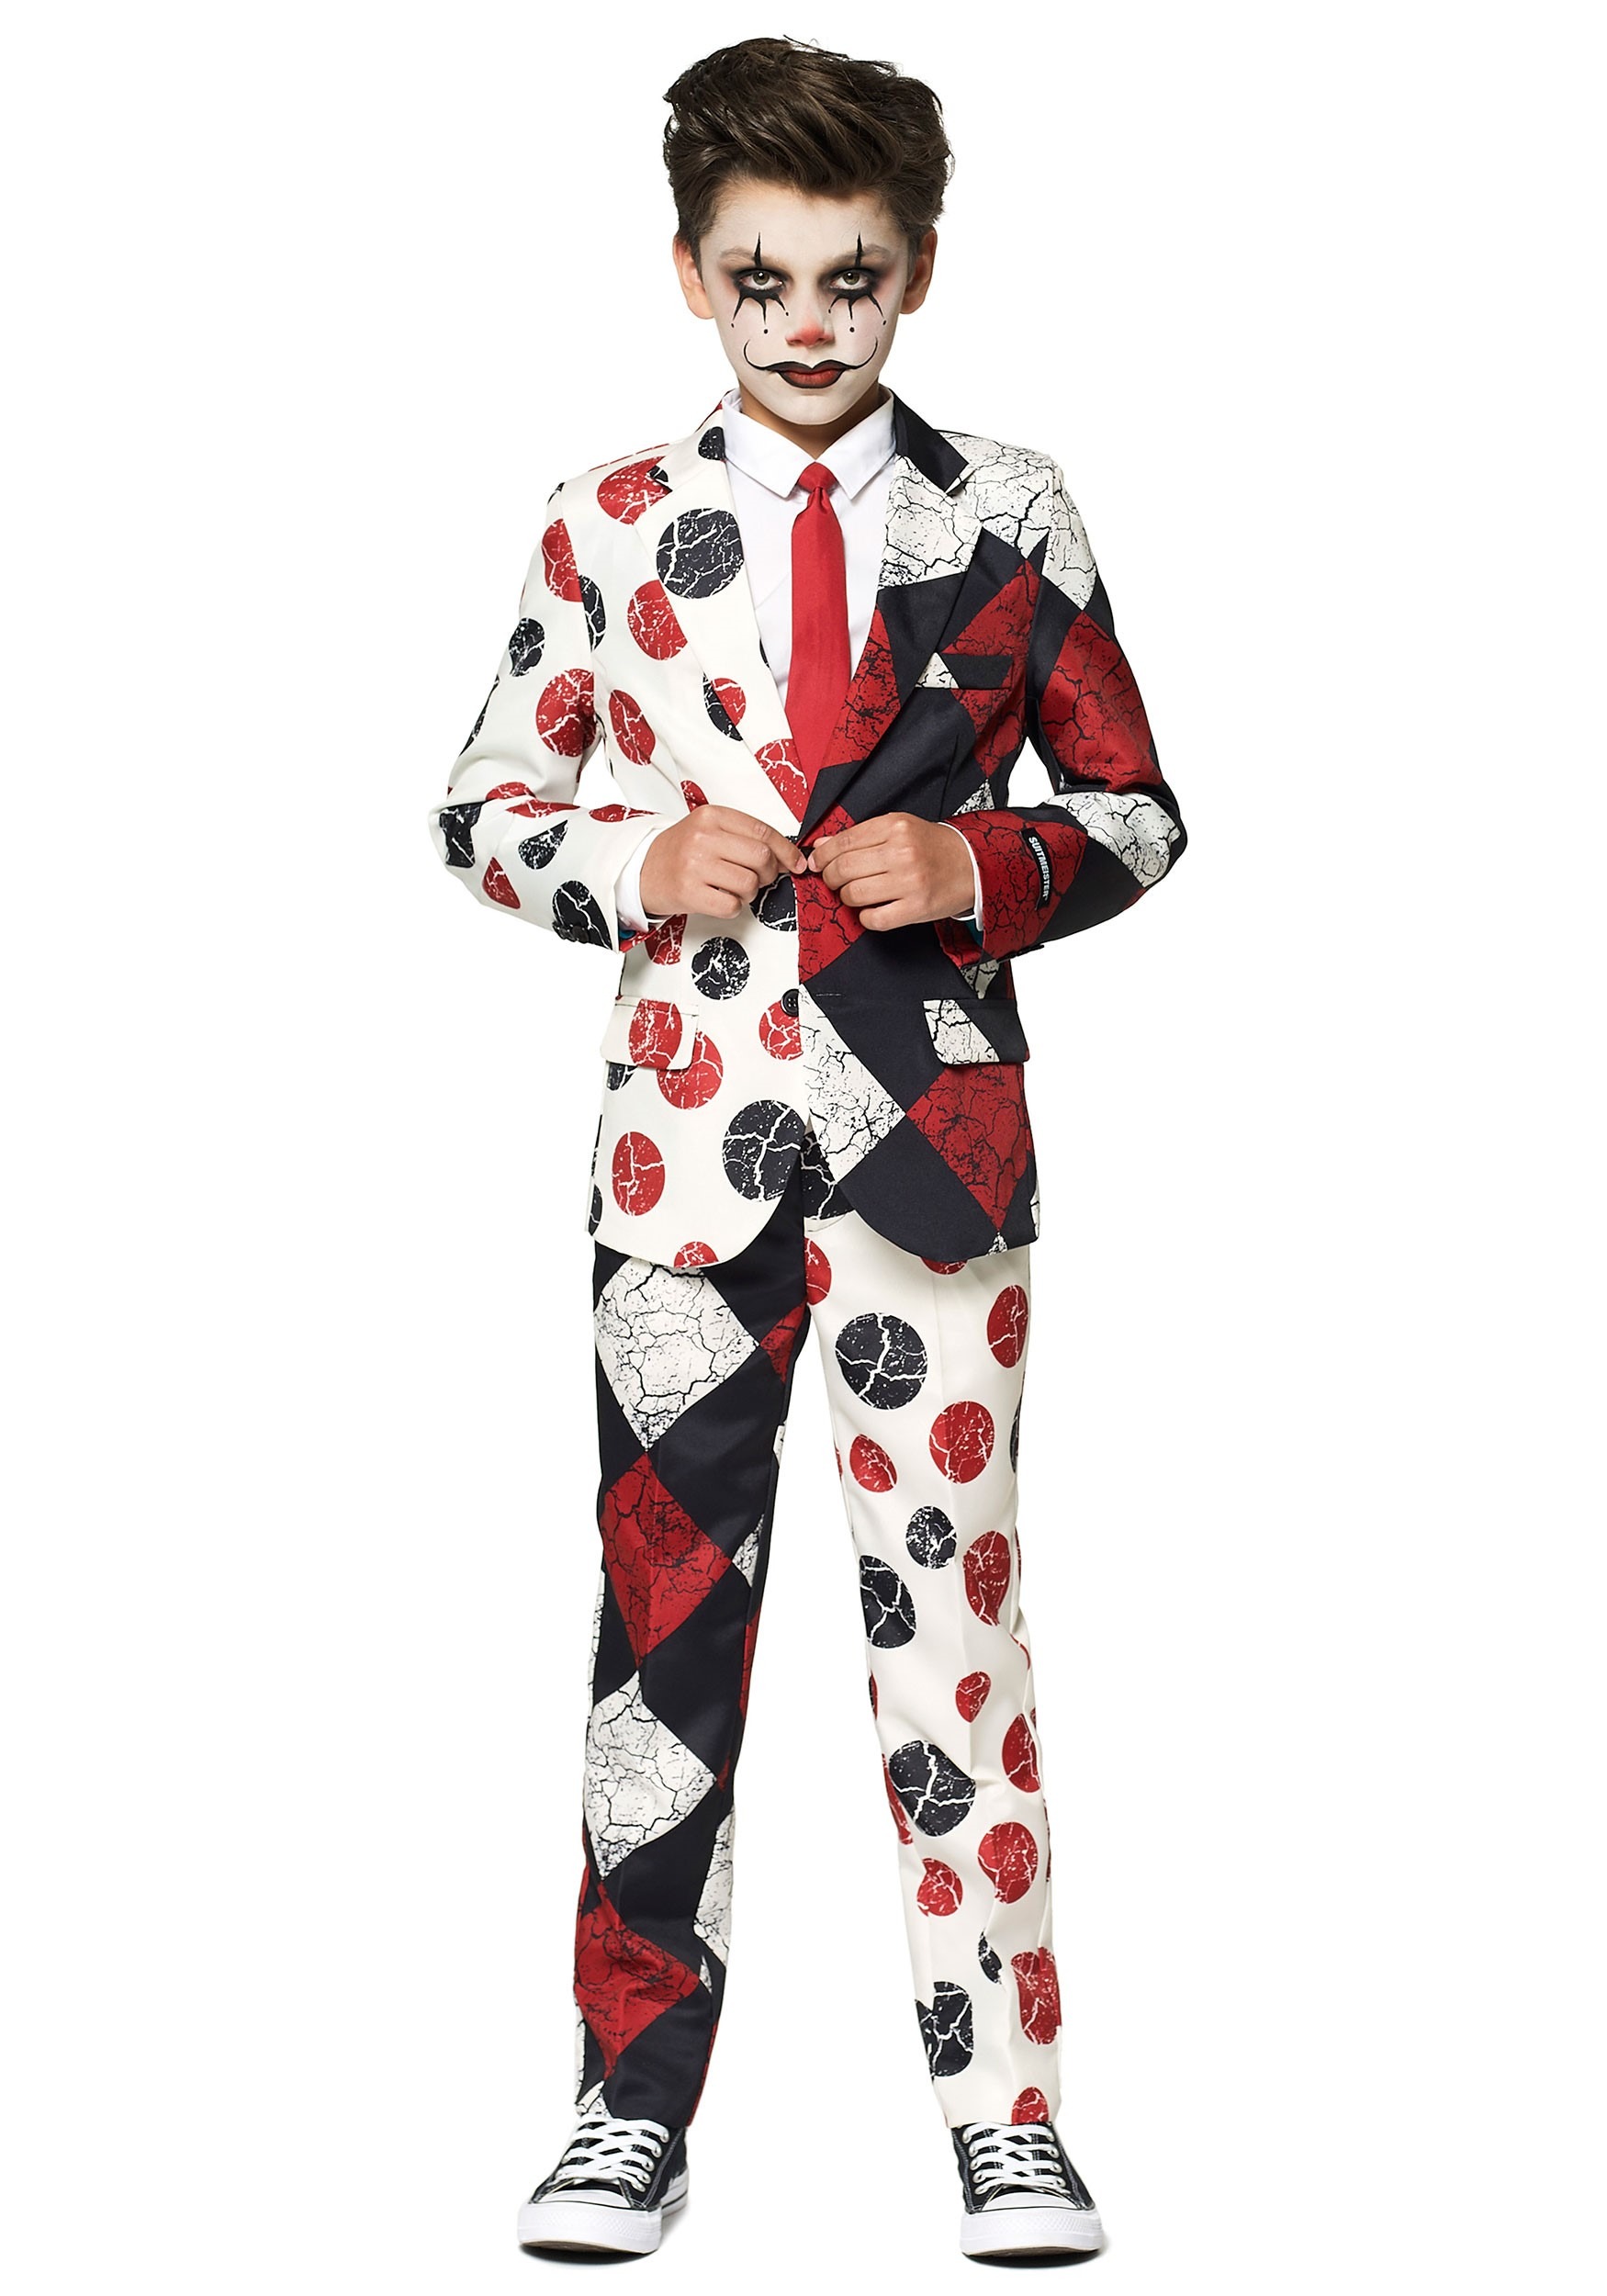 Suitmeister Clown: Boy’s Suit